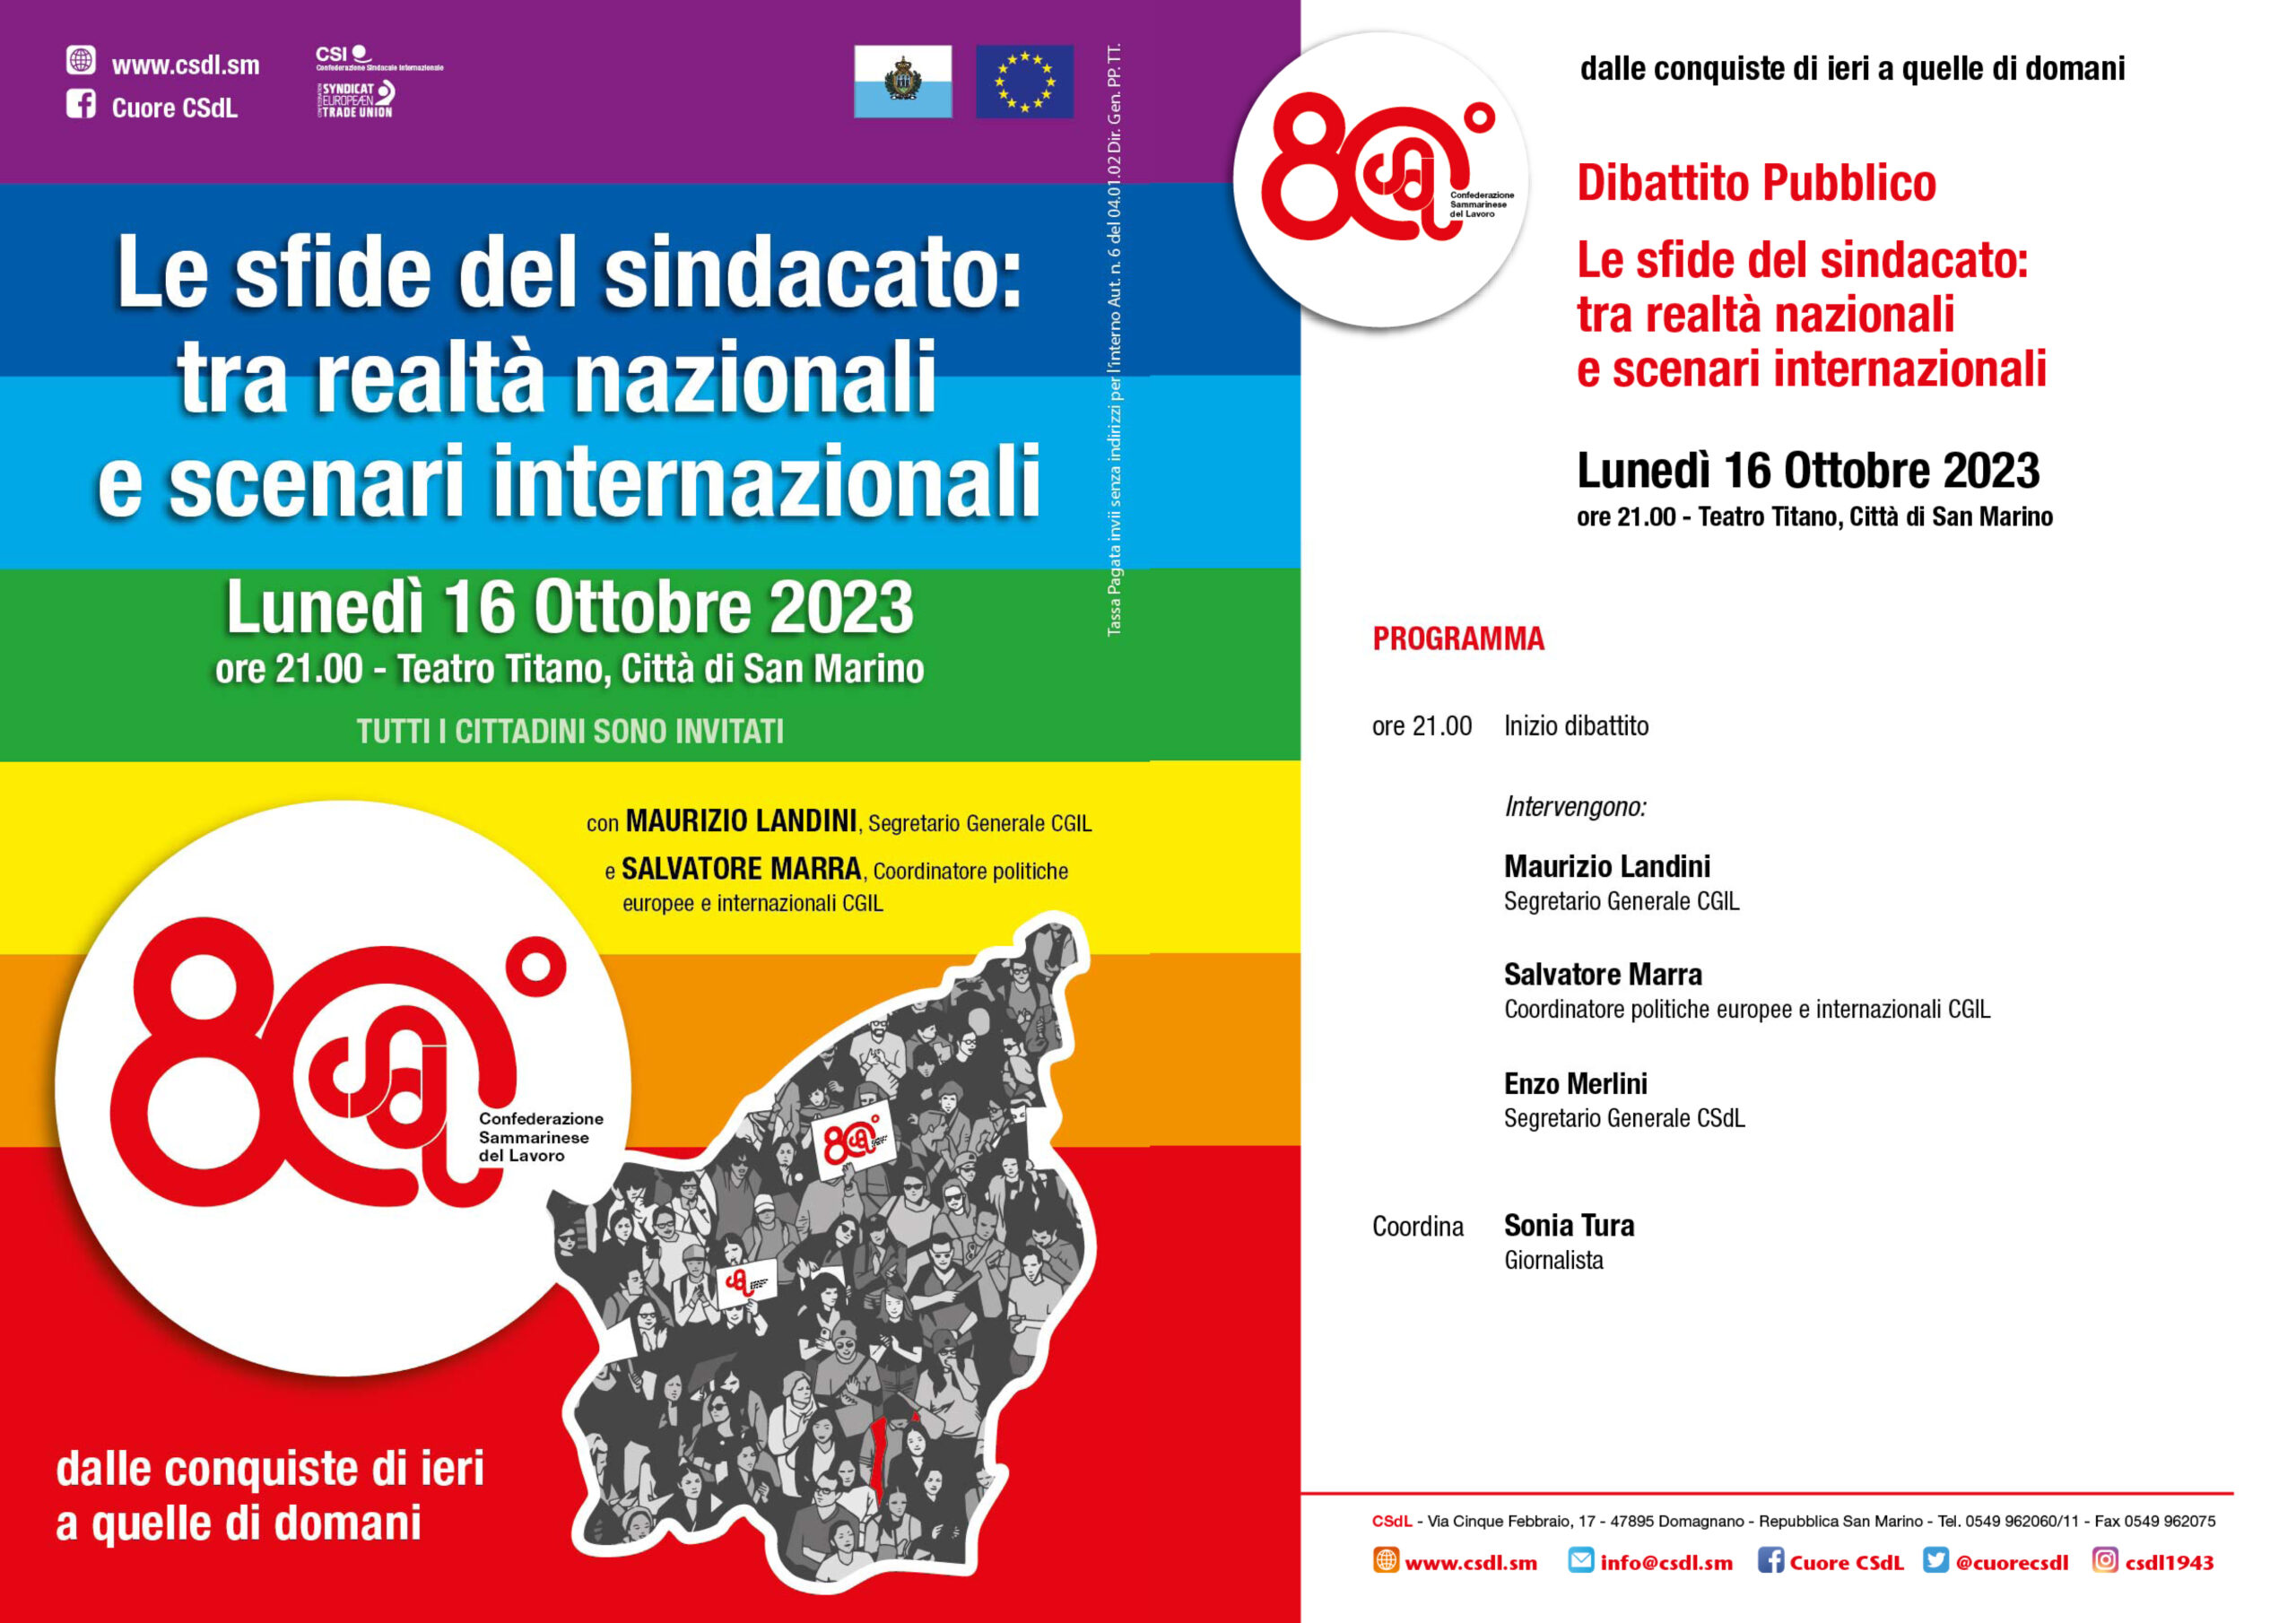 San Marino. Le sfide interne e internazionali del sindacato: lunedì 16 ottobre dibattito pubblico con Maurizio Landini